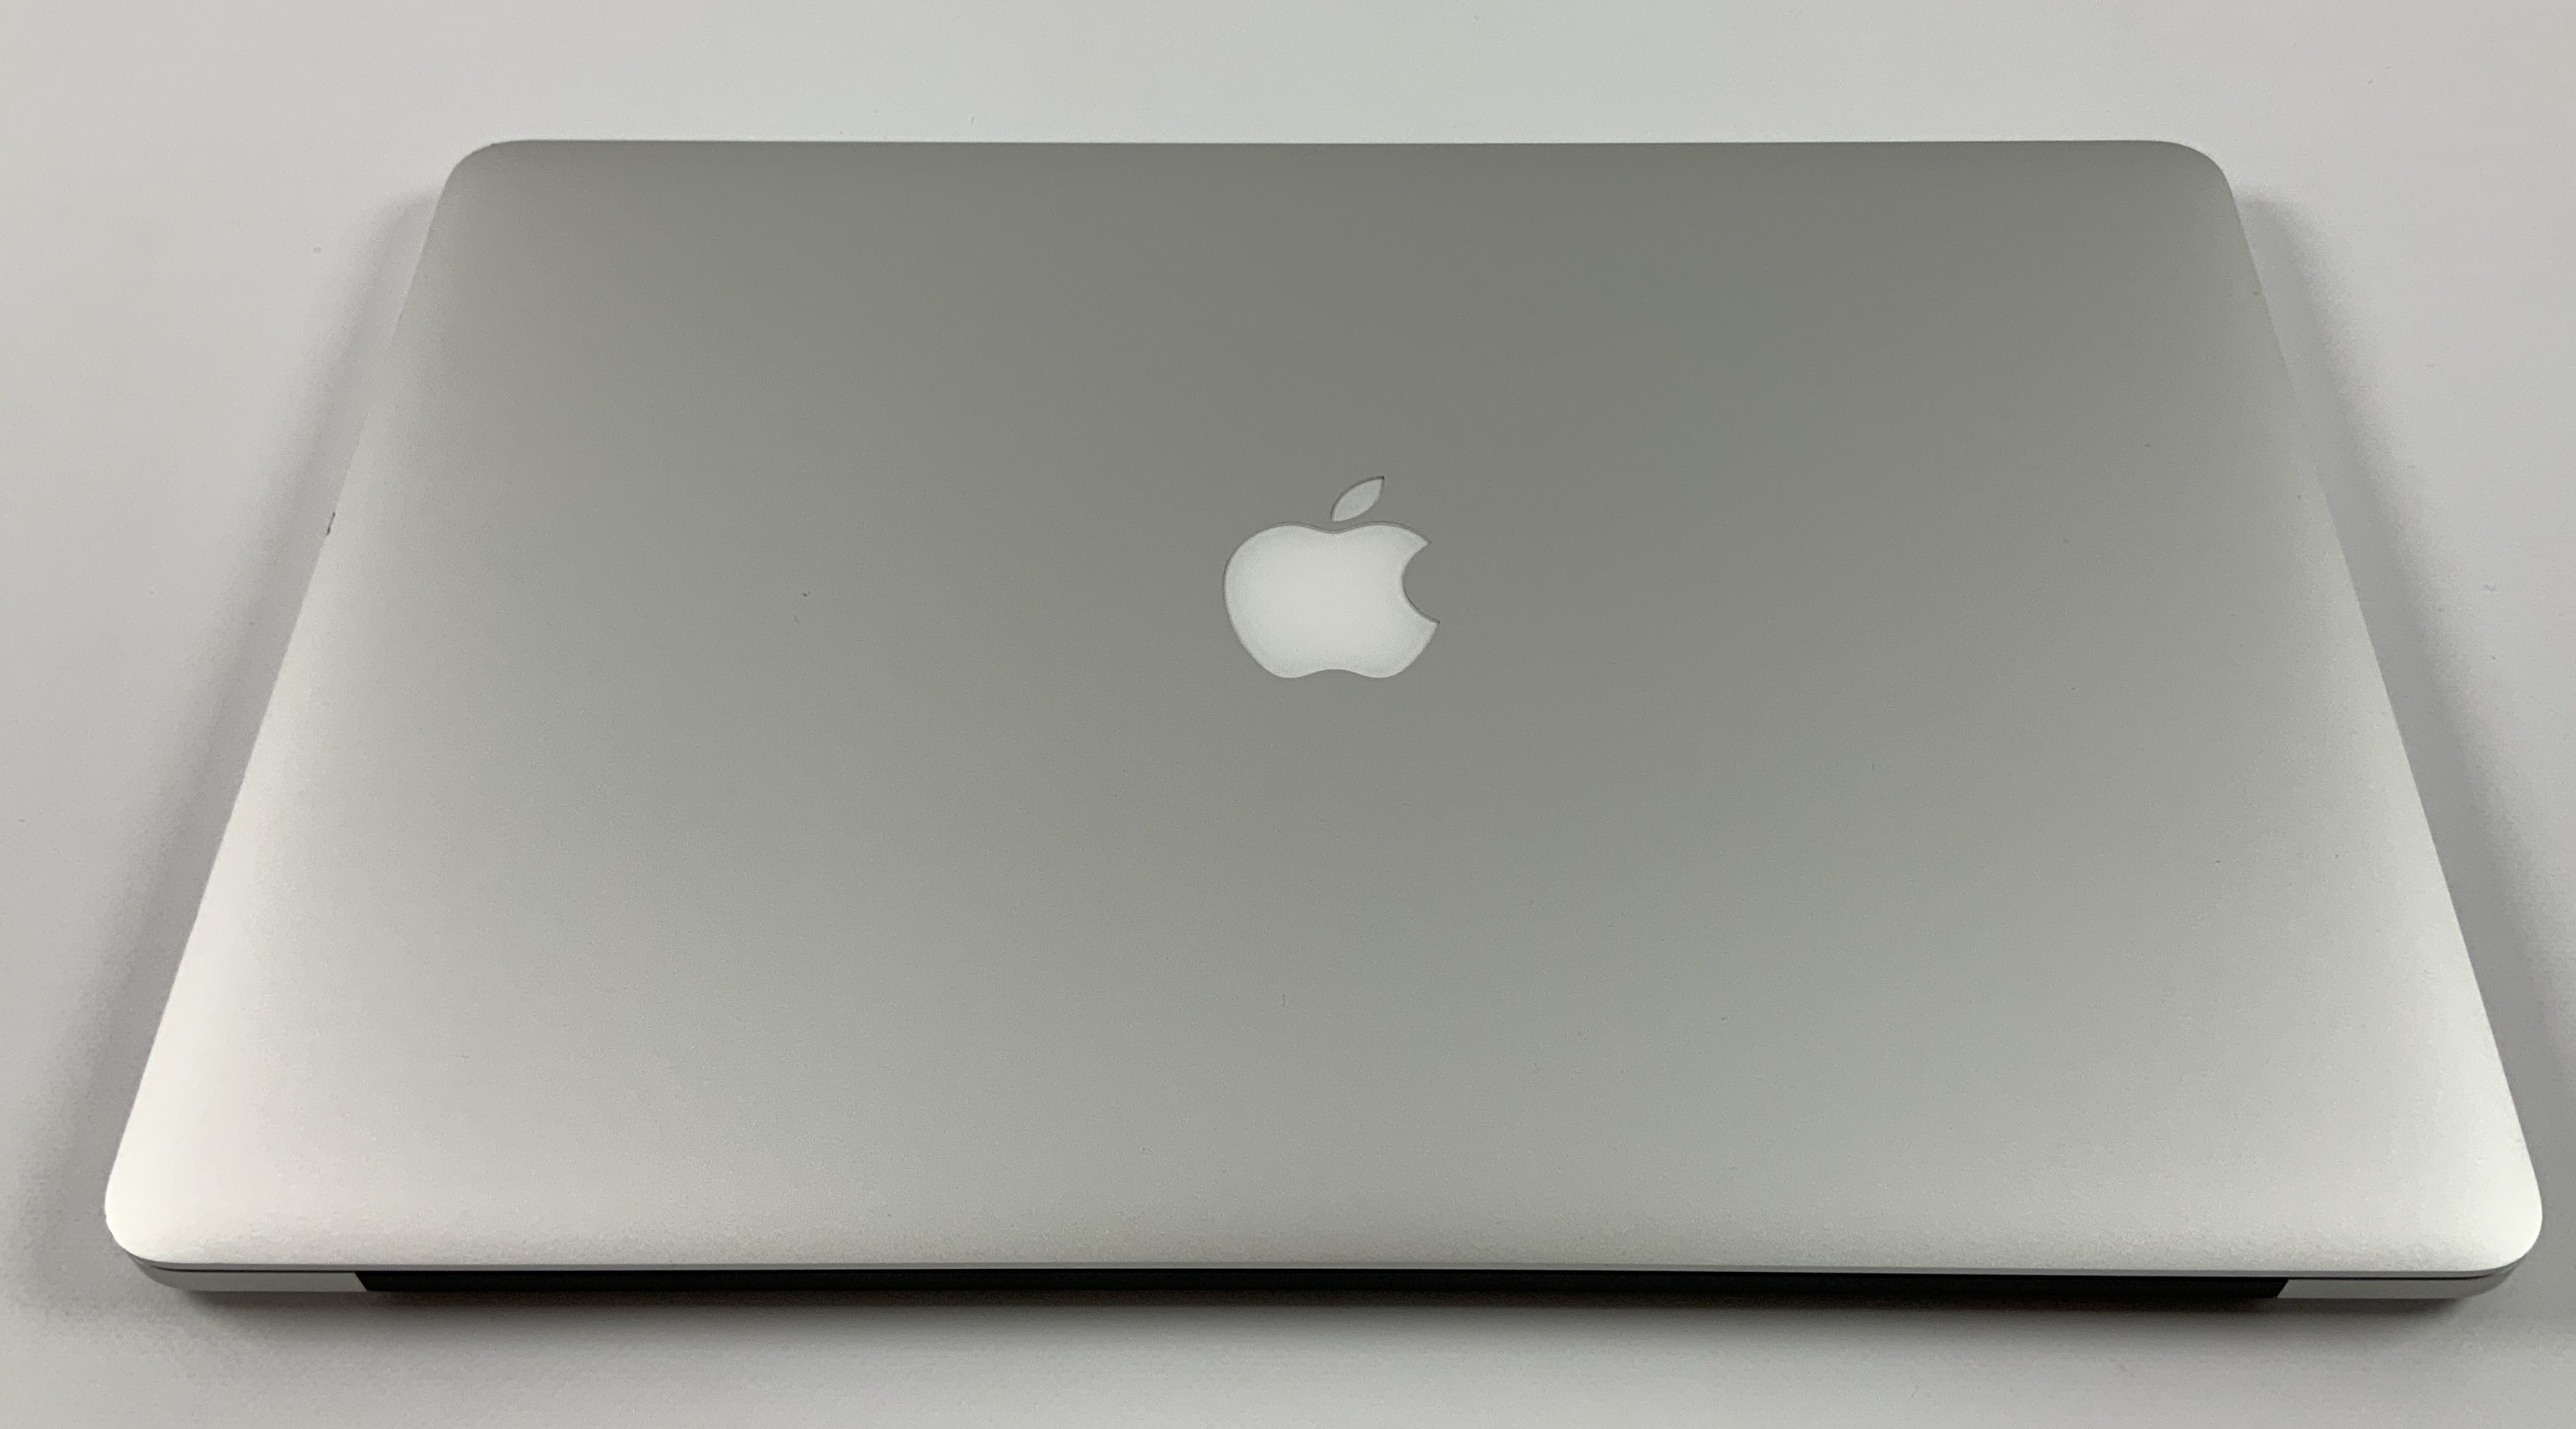 MacBook Pro Retina 15" Mid 2015 (Intel Quad-Core i7 2.2 GHz 16 GB RAM 256 GB SSD), Intel Quad-Core i7 2.2 GHz, 16 GB RAM, 256 GB SSD, immagine 2